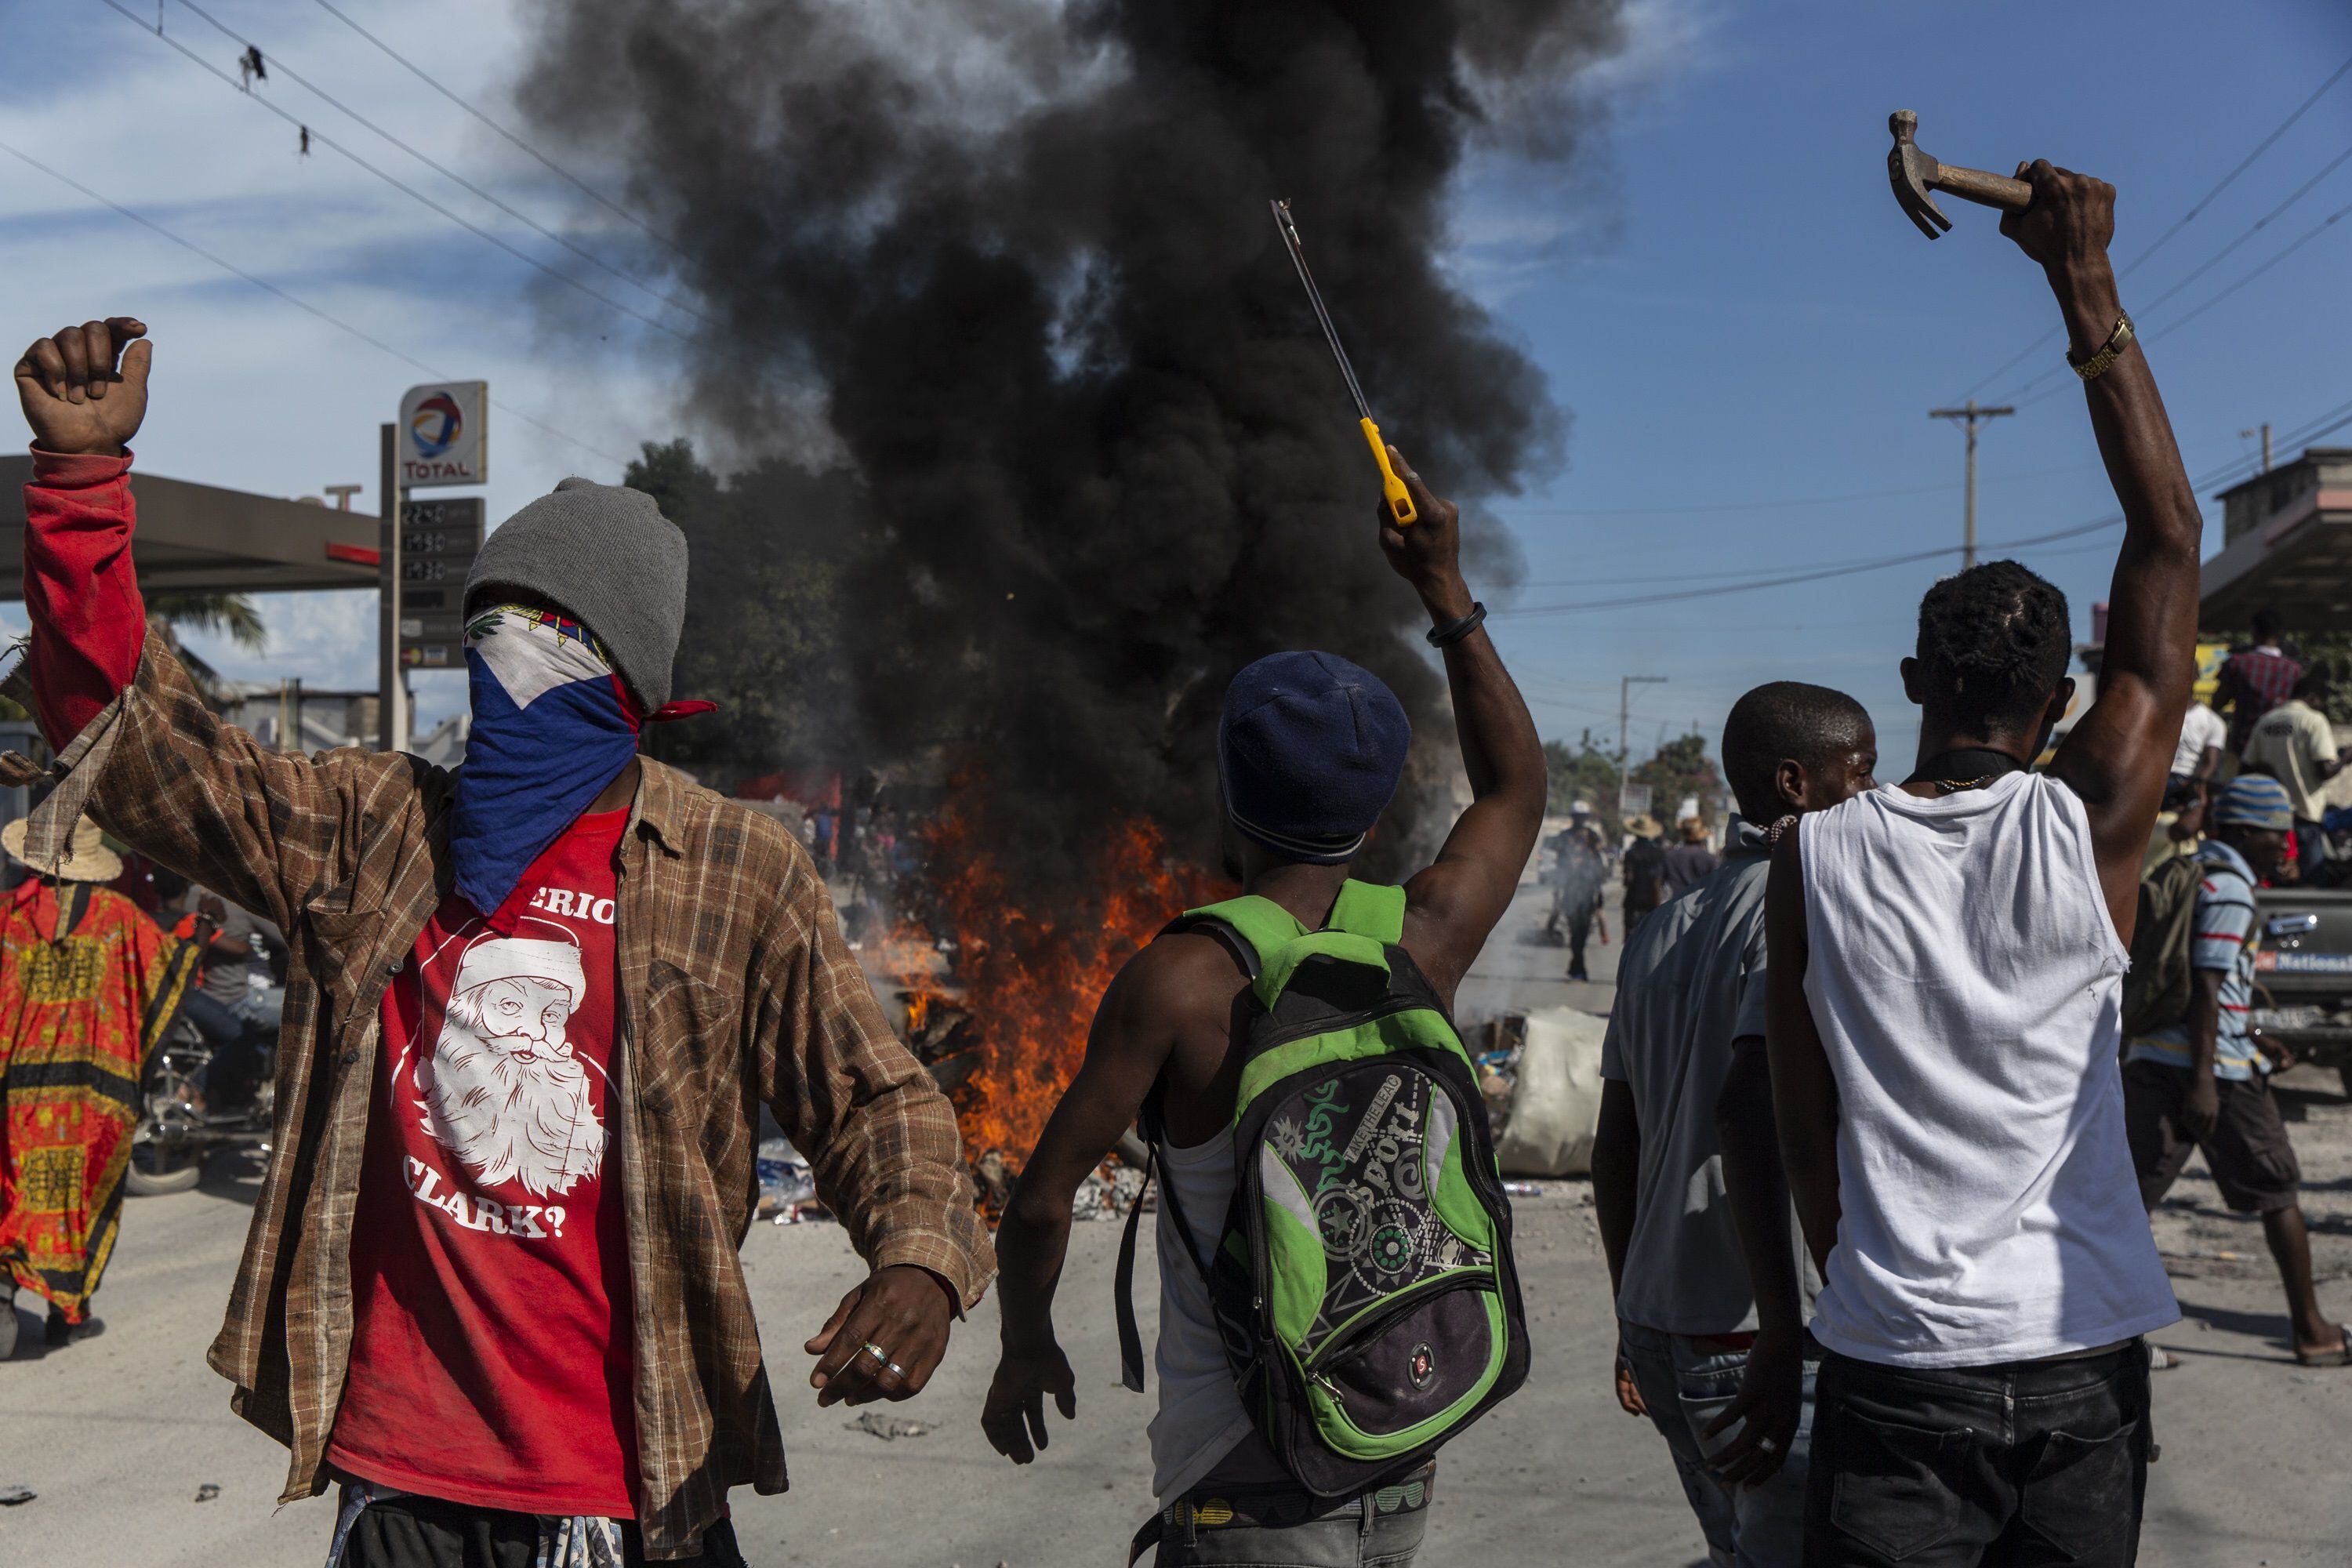 La Red Nacional para la Defensa de los Derechos Humanos en Haití ha denunciado que al menos 70 personas han muerto por la violencia de las bandas criminales desde principios de agosto. (EUROPA PRESS)